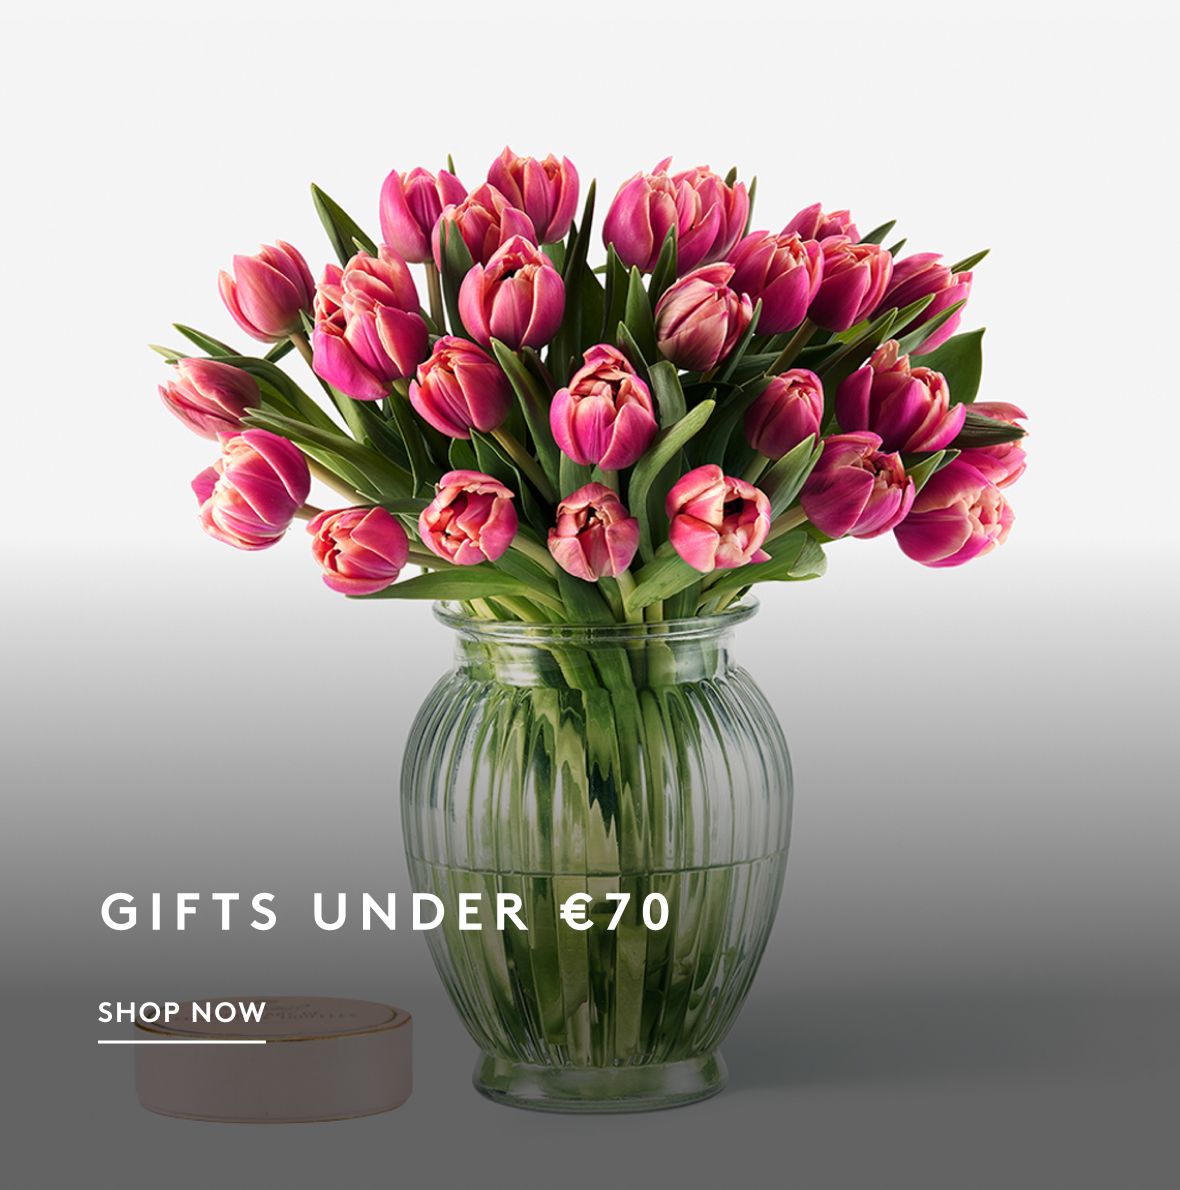 Flowers under €70